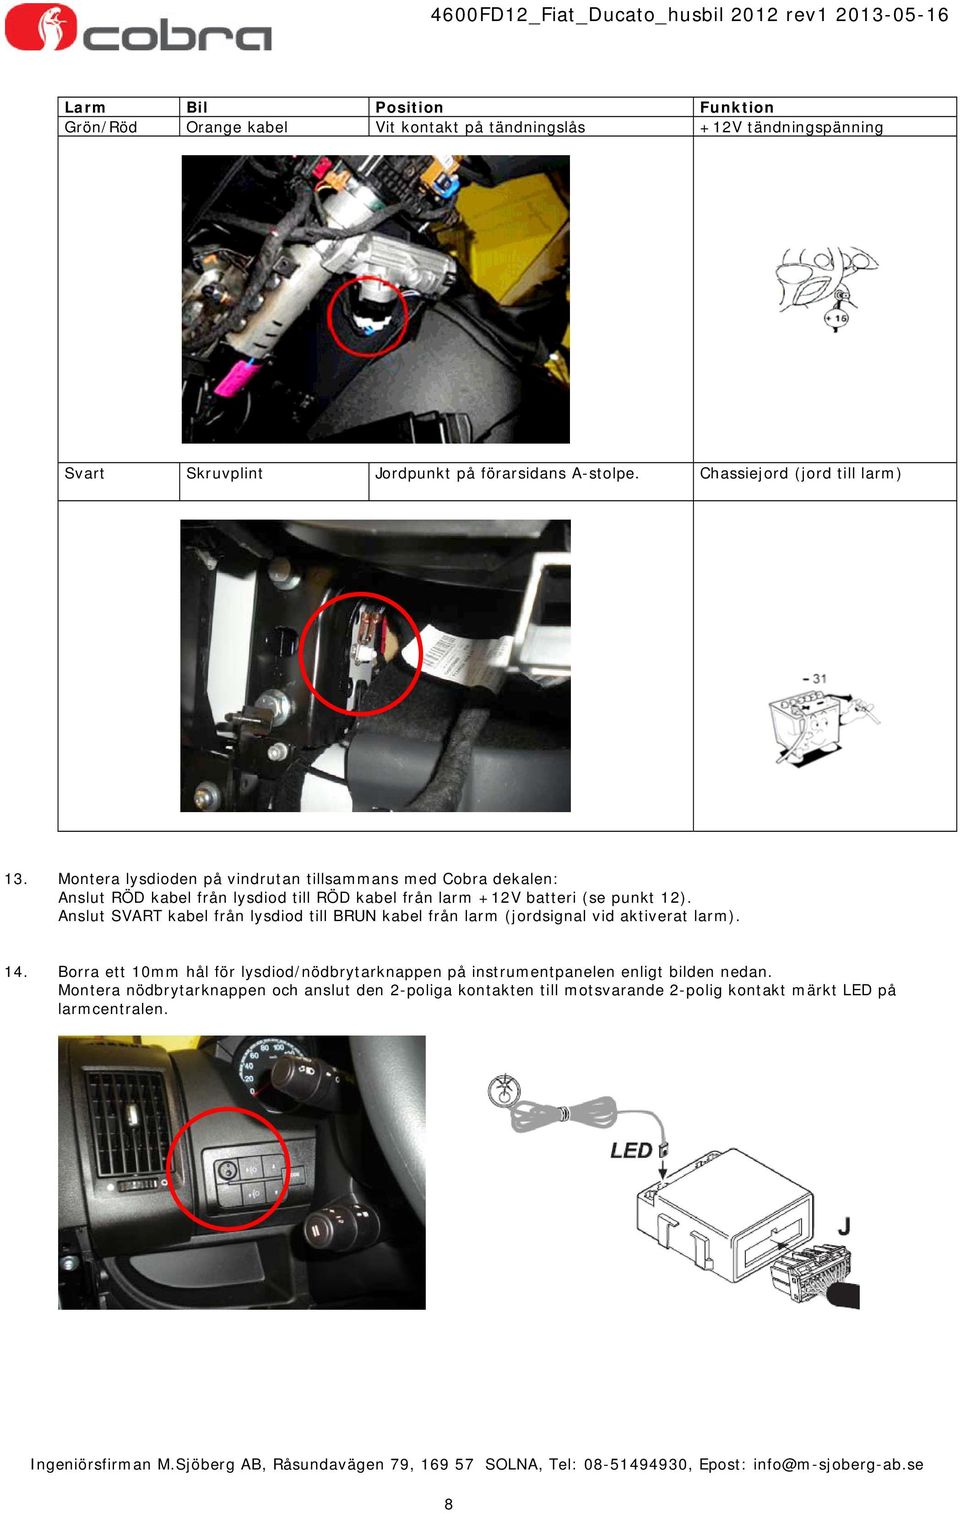 Montera lysdioden på vindrutan tillsammans med Cobra dekalen: Anslut RÖD kabel från lysdiod till RÖD kabel från larm batteri (se punkt 12).